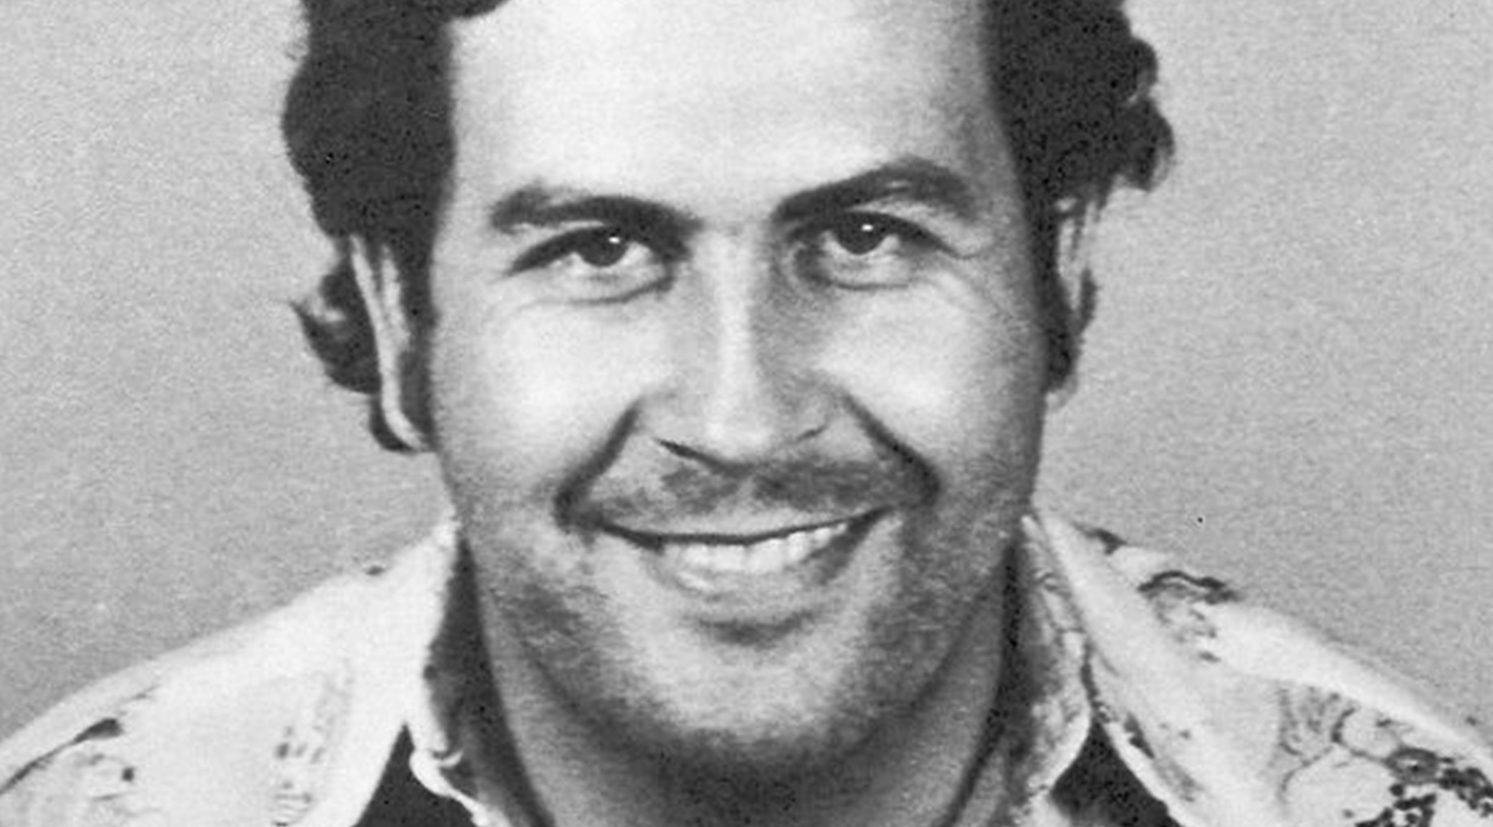 Más secretos de la ostentosa vida de Pablo Escobar han sido revelados